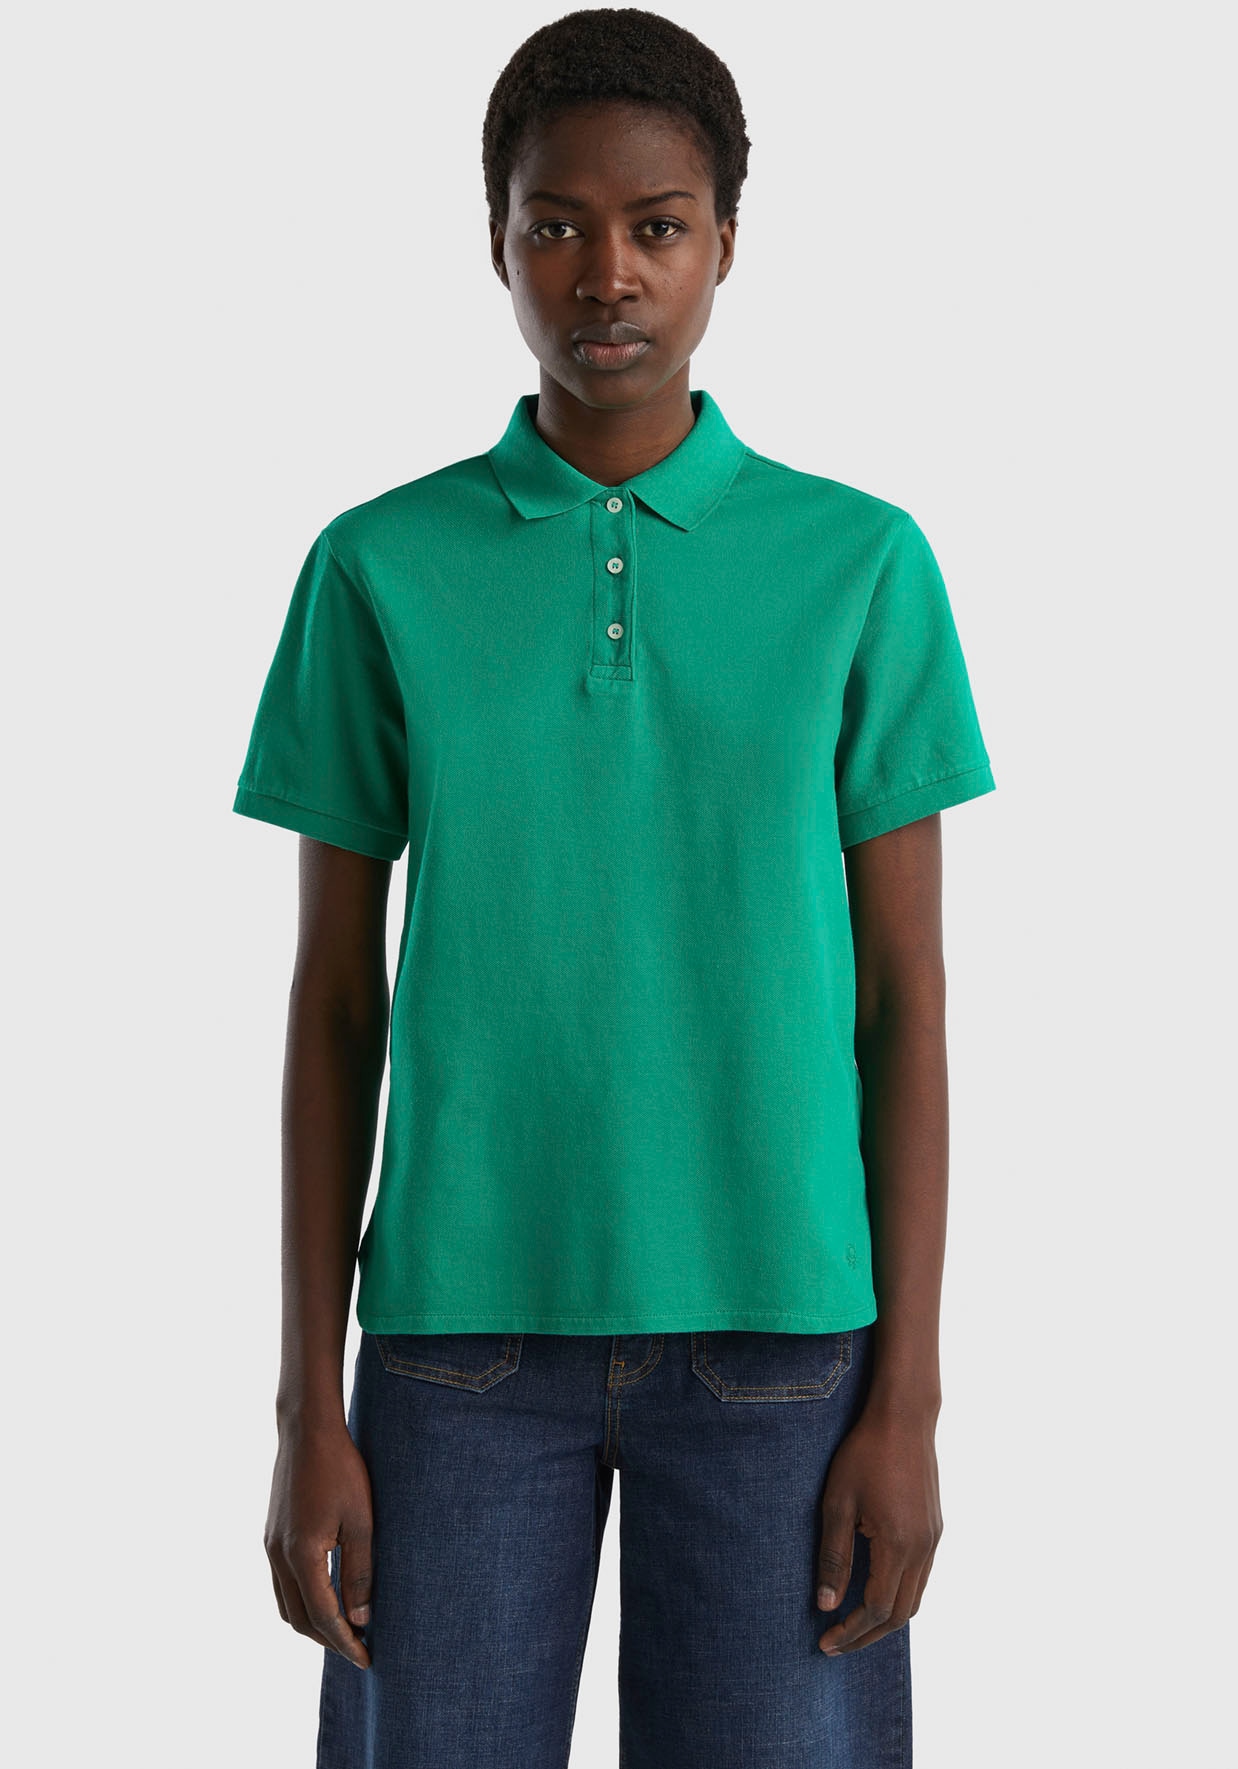 United Colors of Benetton ♕ mit Poloshirt, bei perlmuttfarbenen Knöpfen